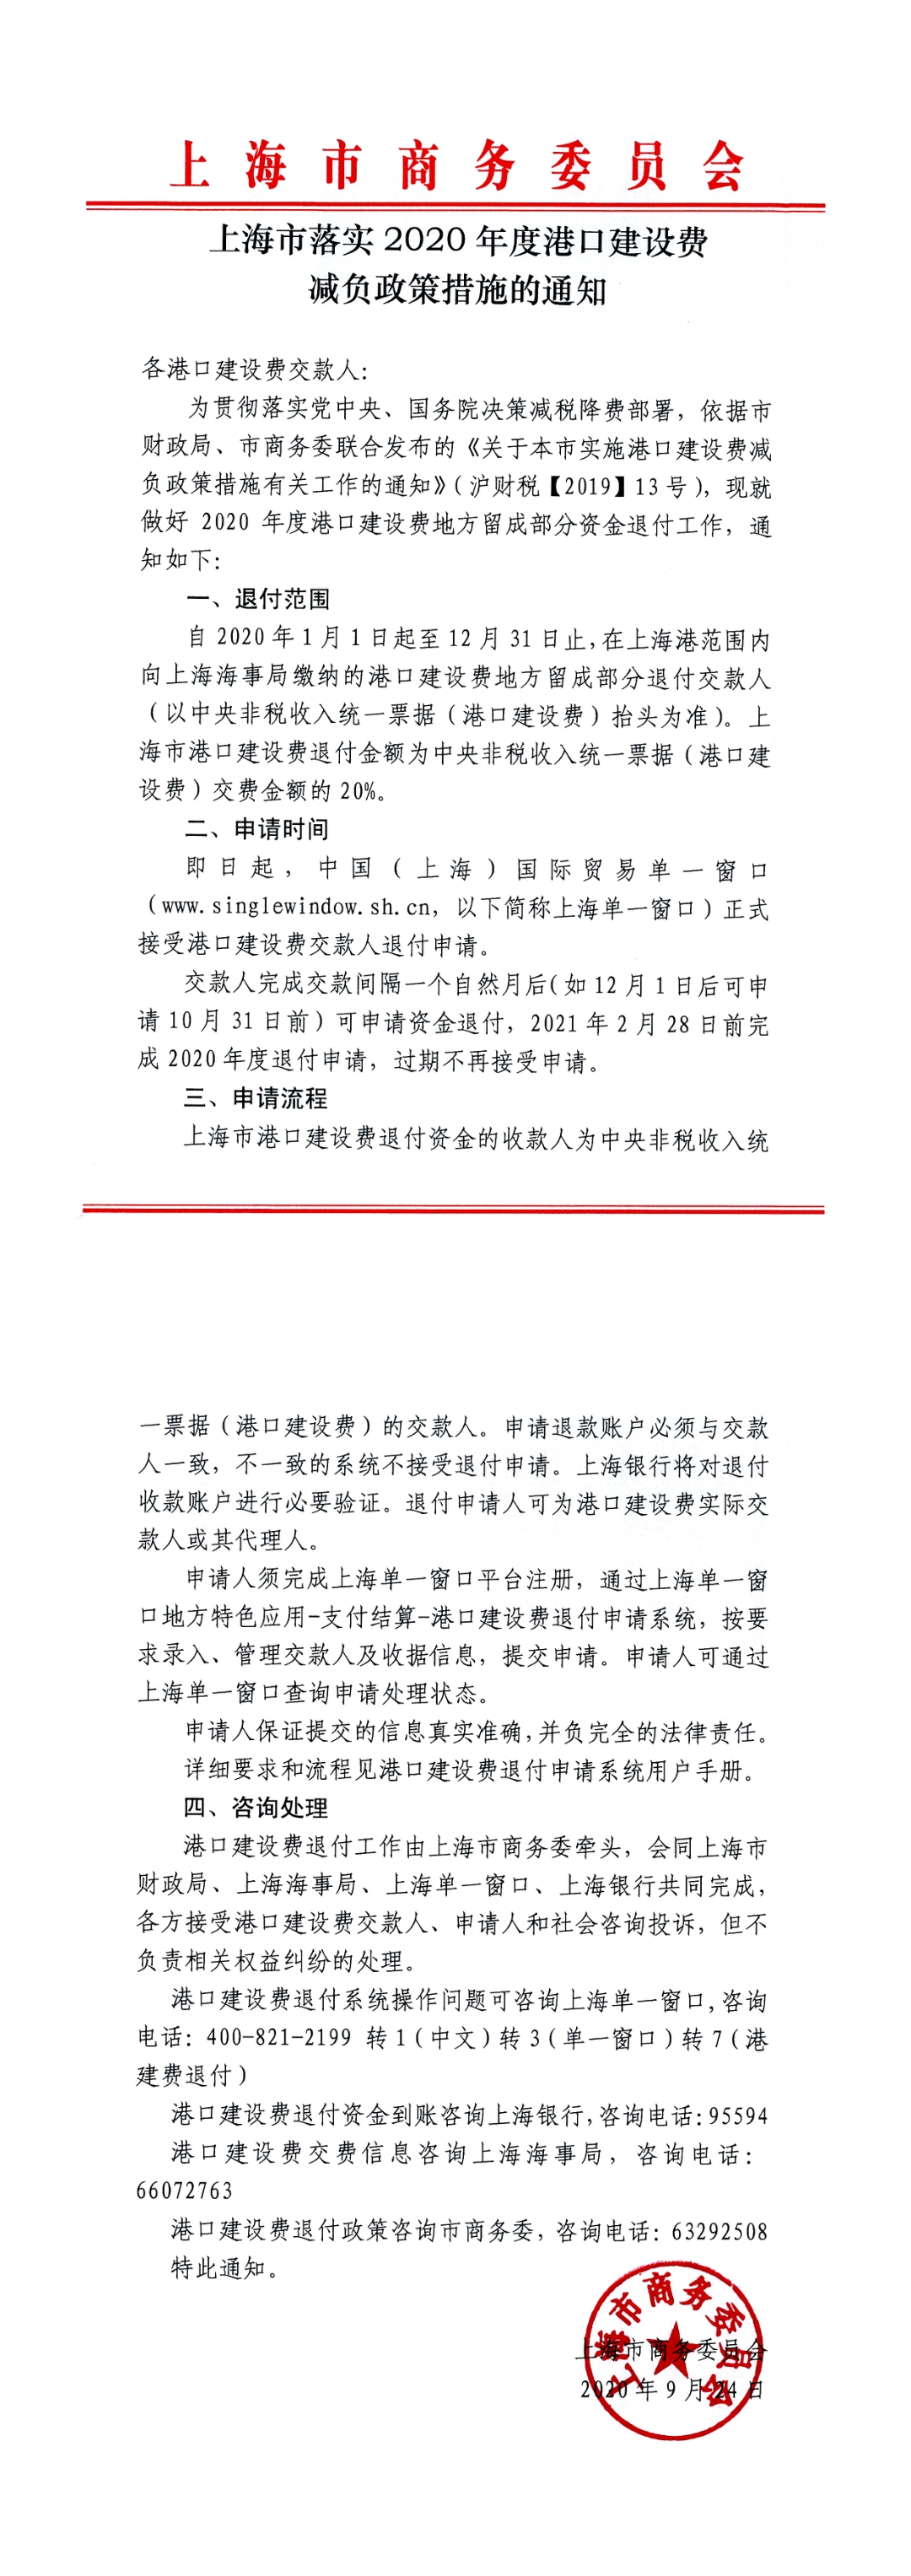 9.27【通知】上海市落实2020年度港口建设费减负政策措施的通知.jpg